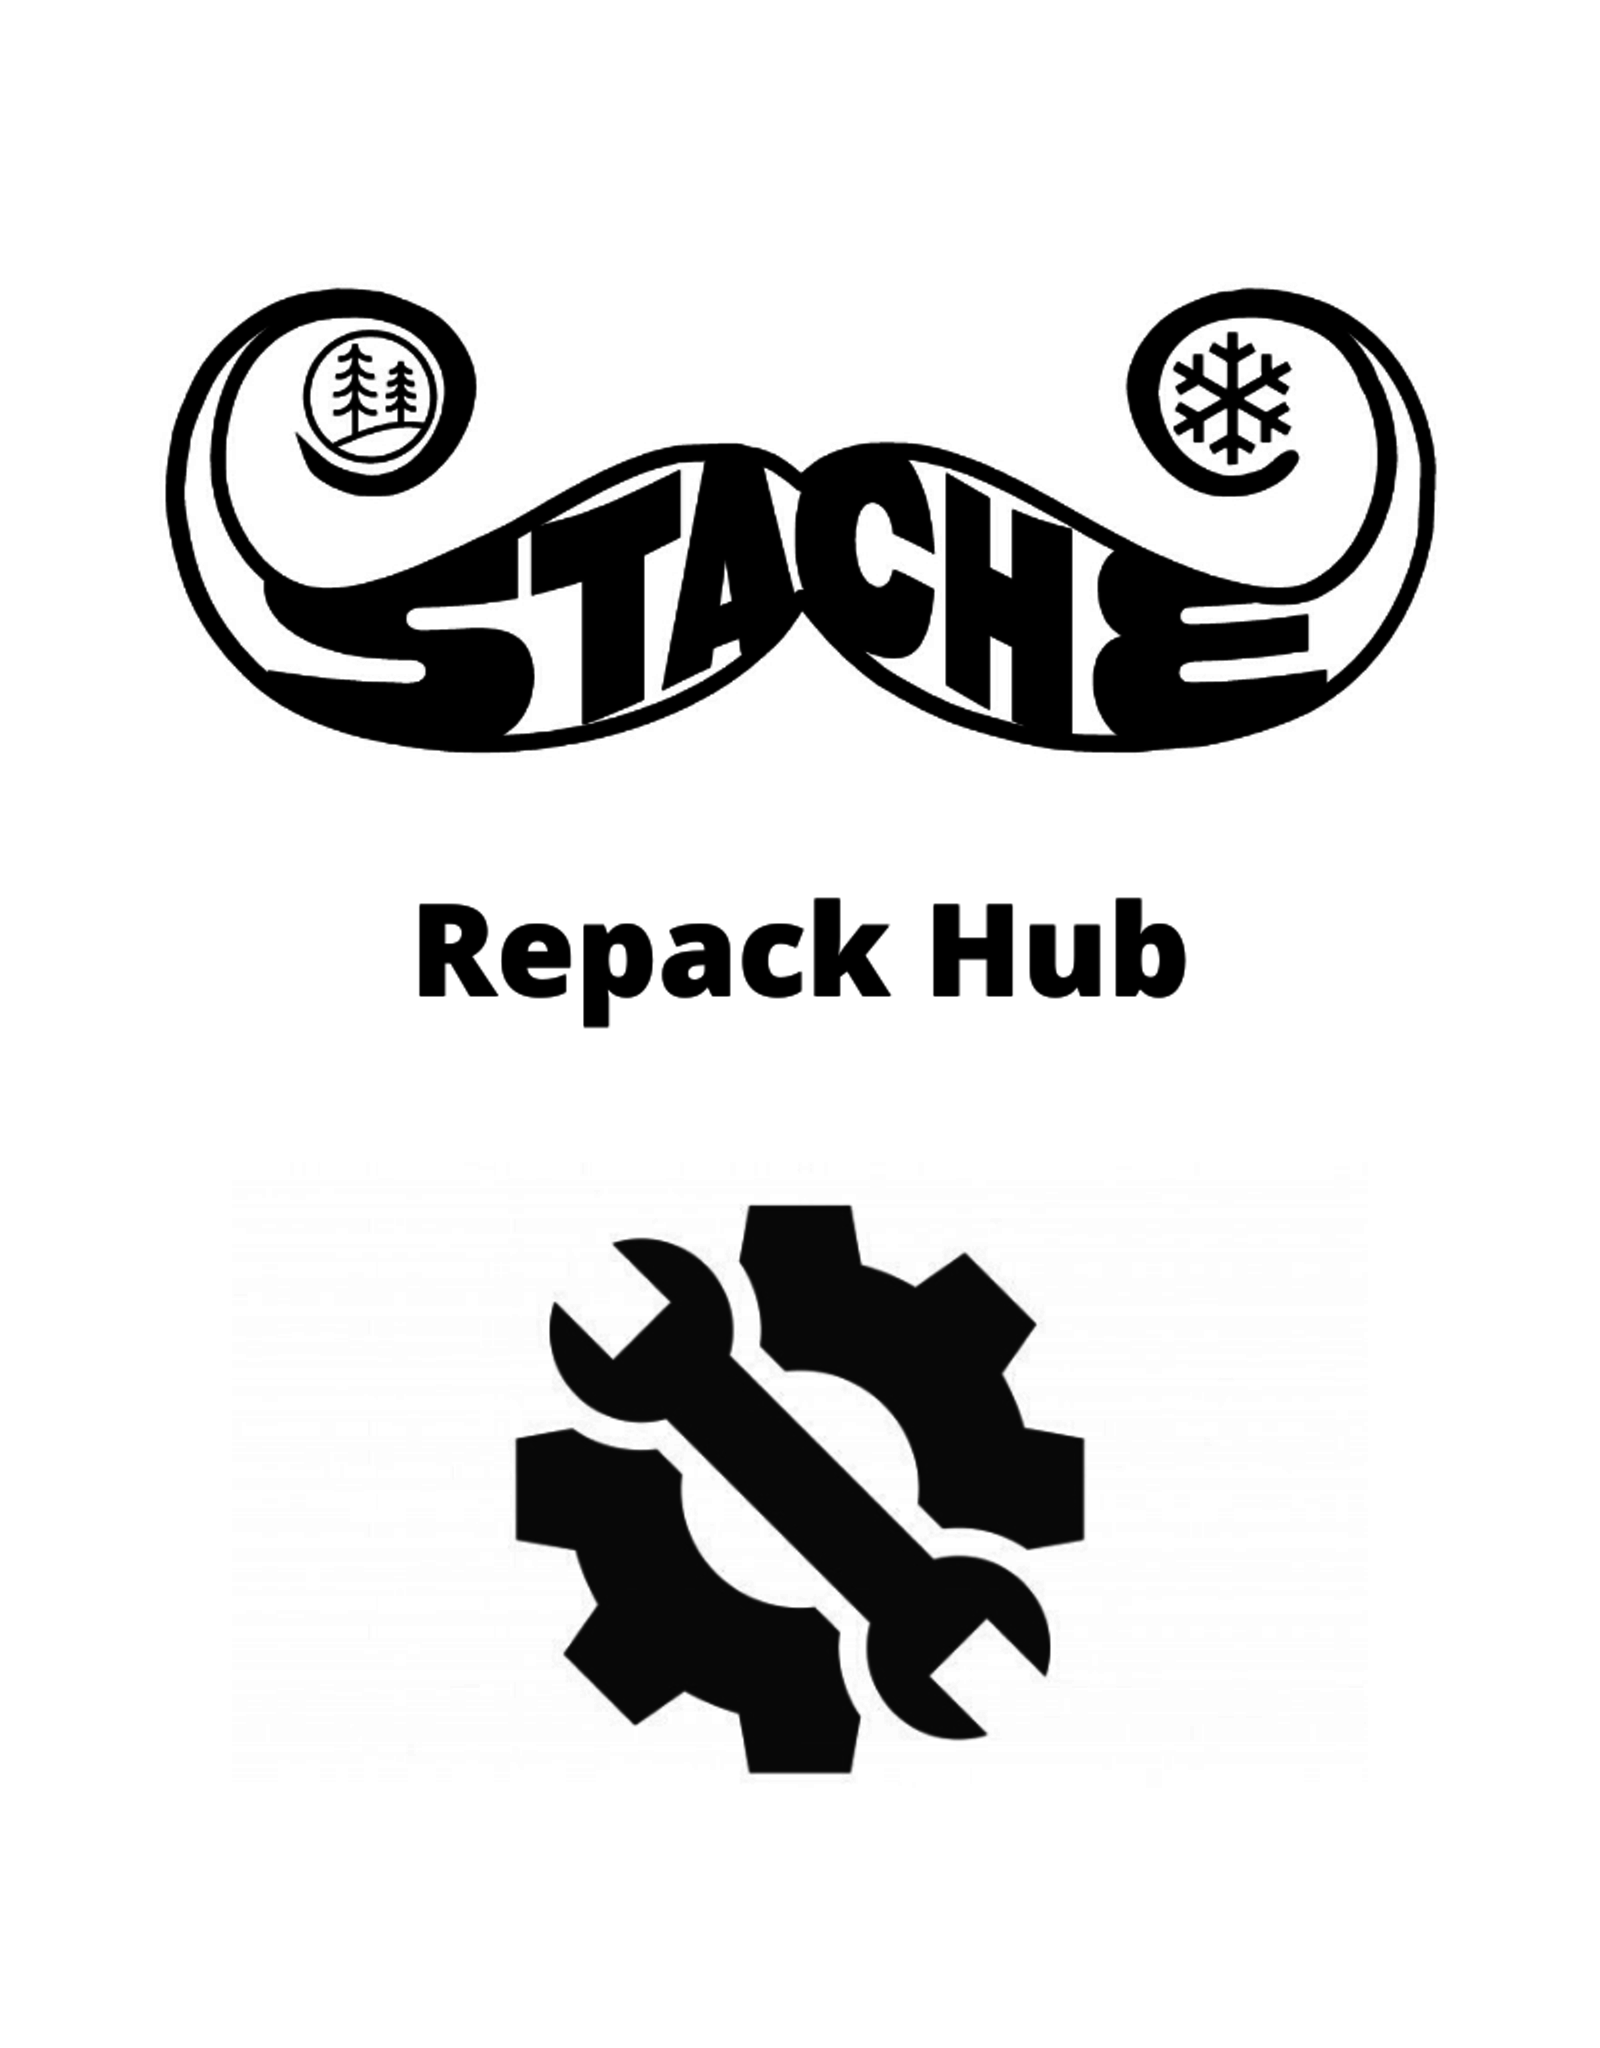 Repack Hub